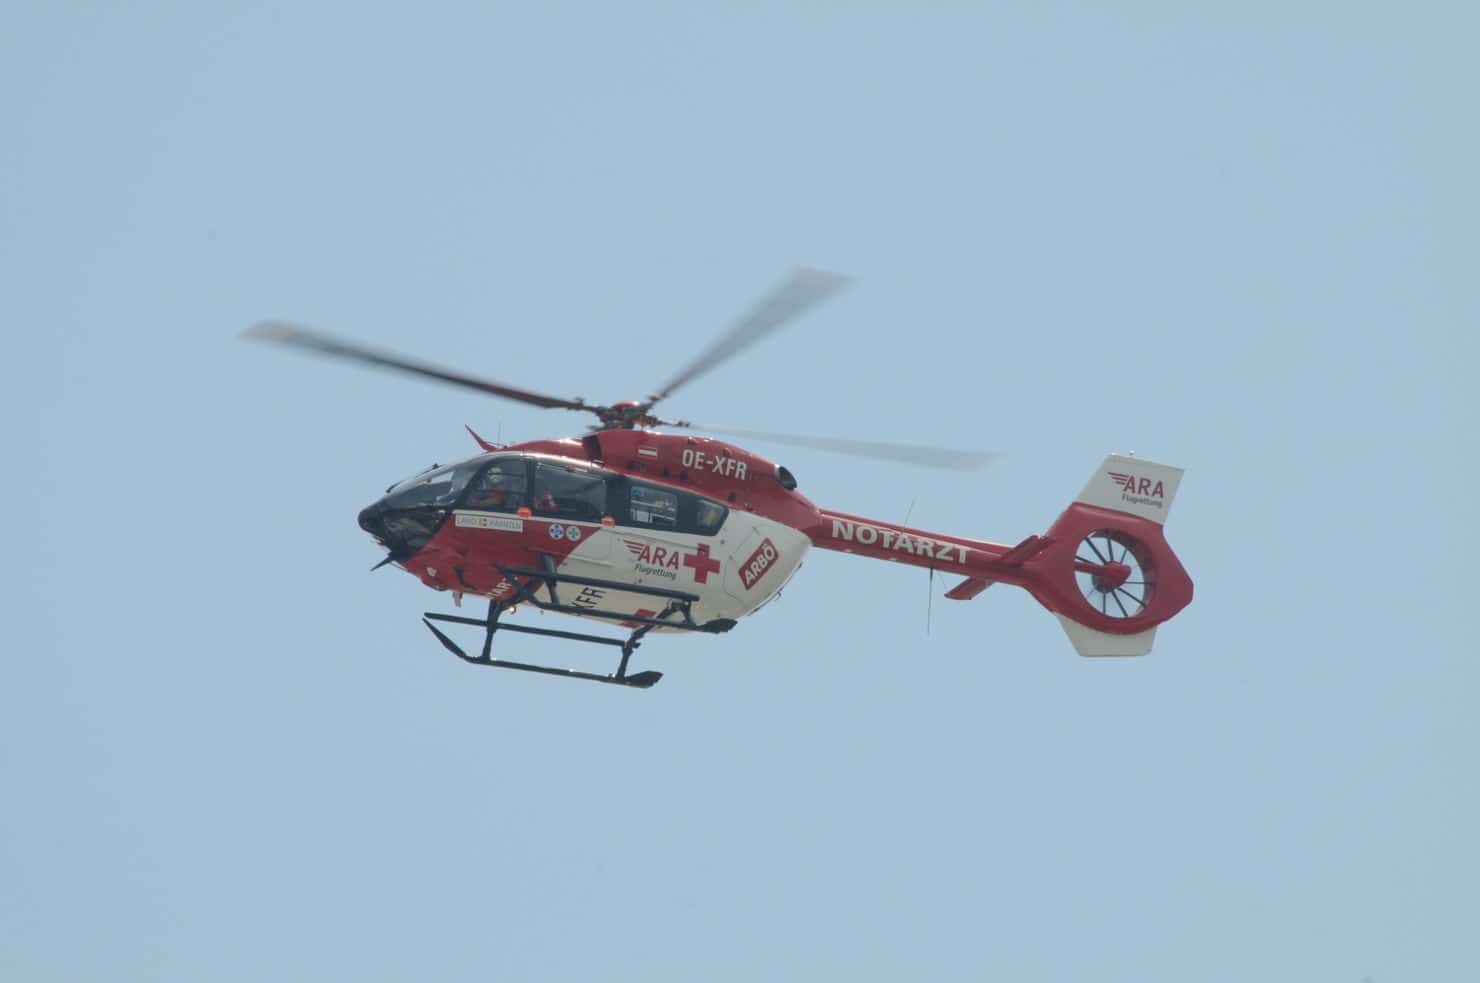 Nach der medizinischen Erstversorgung wurde der 44-Jährige mit dem Rettungshubschrauber RK 1 in das LKH Villach geflogen.